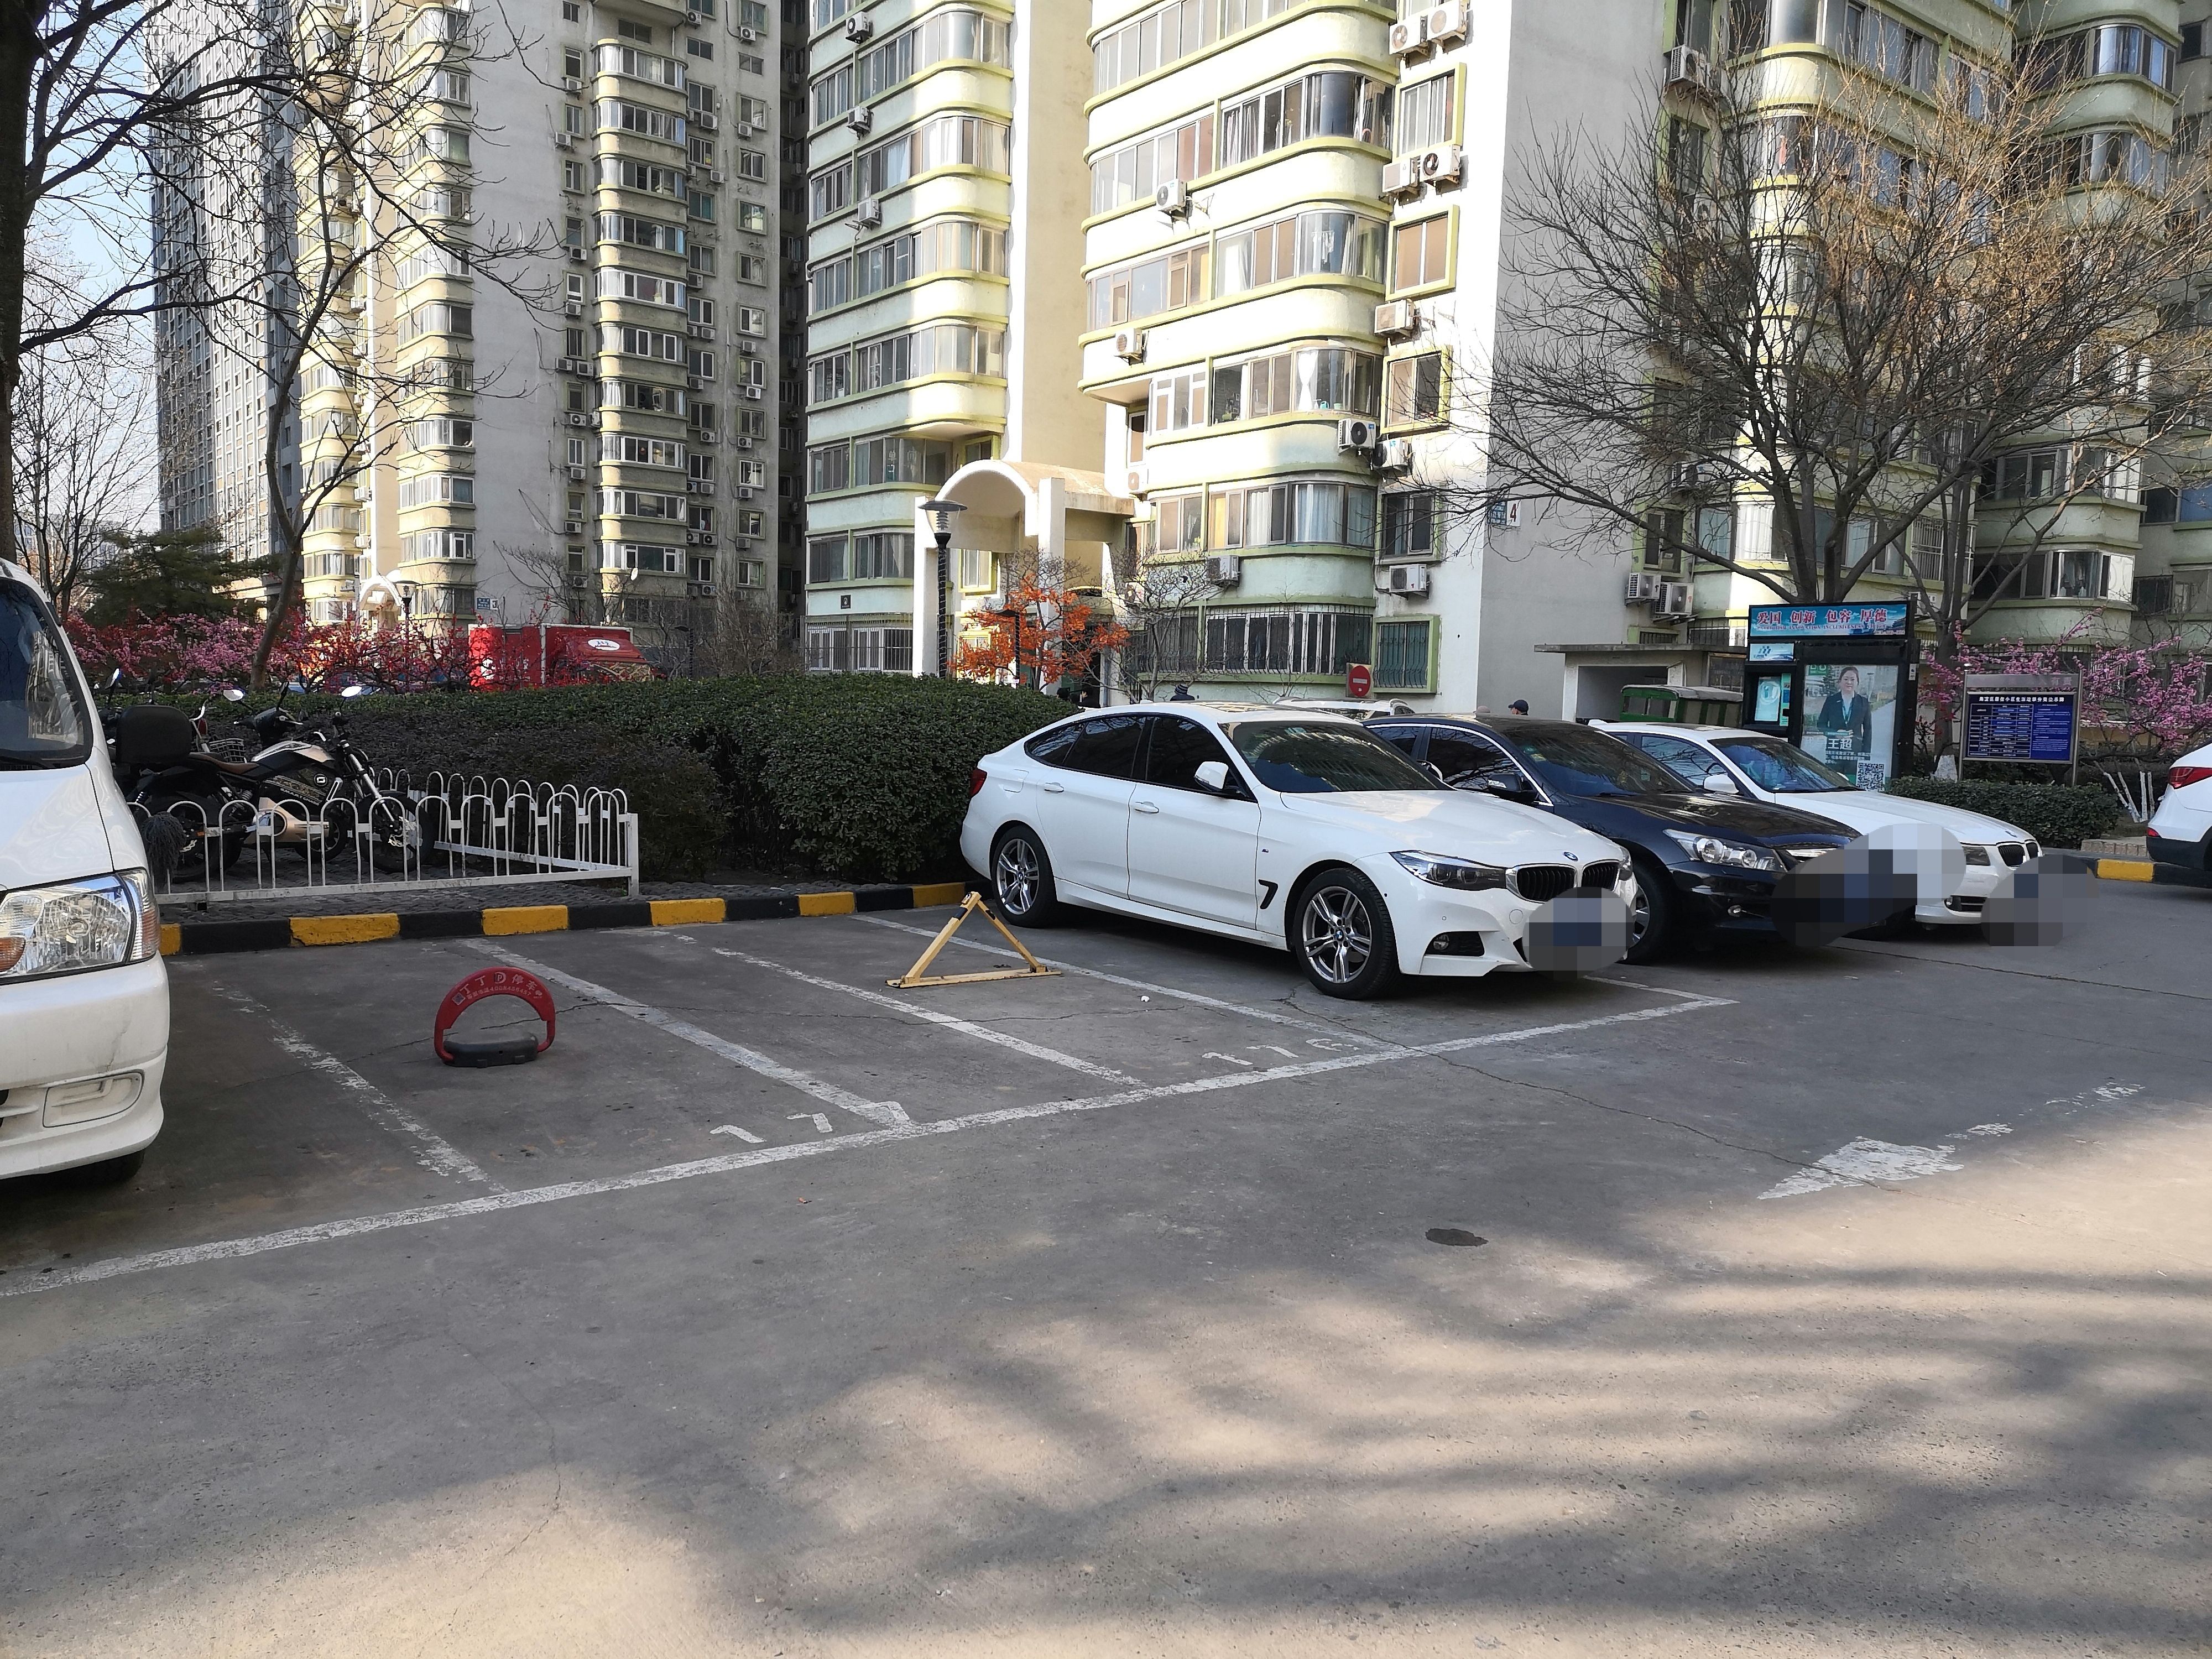 北京共享停车模式实施效果如何?记者探访发现